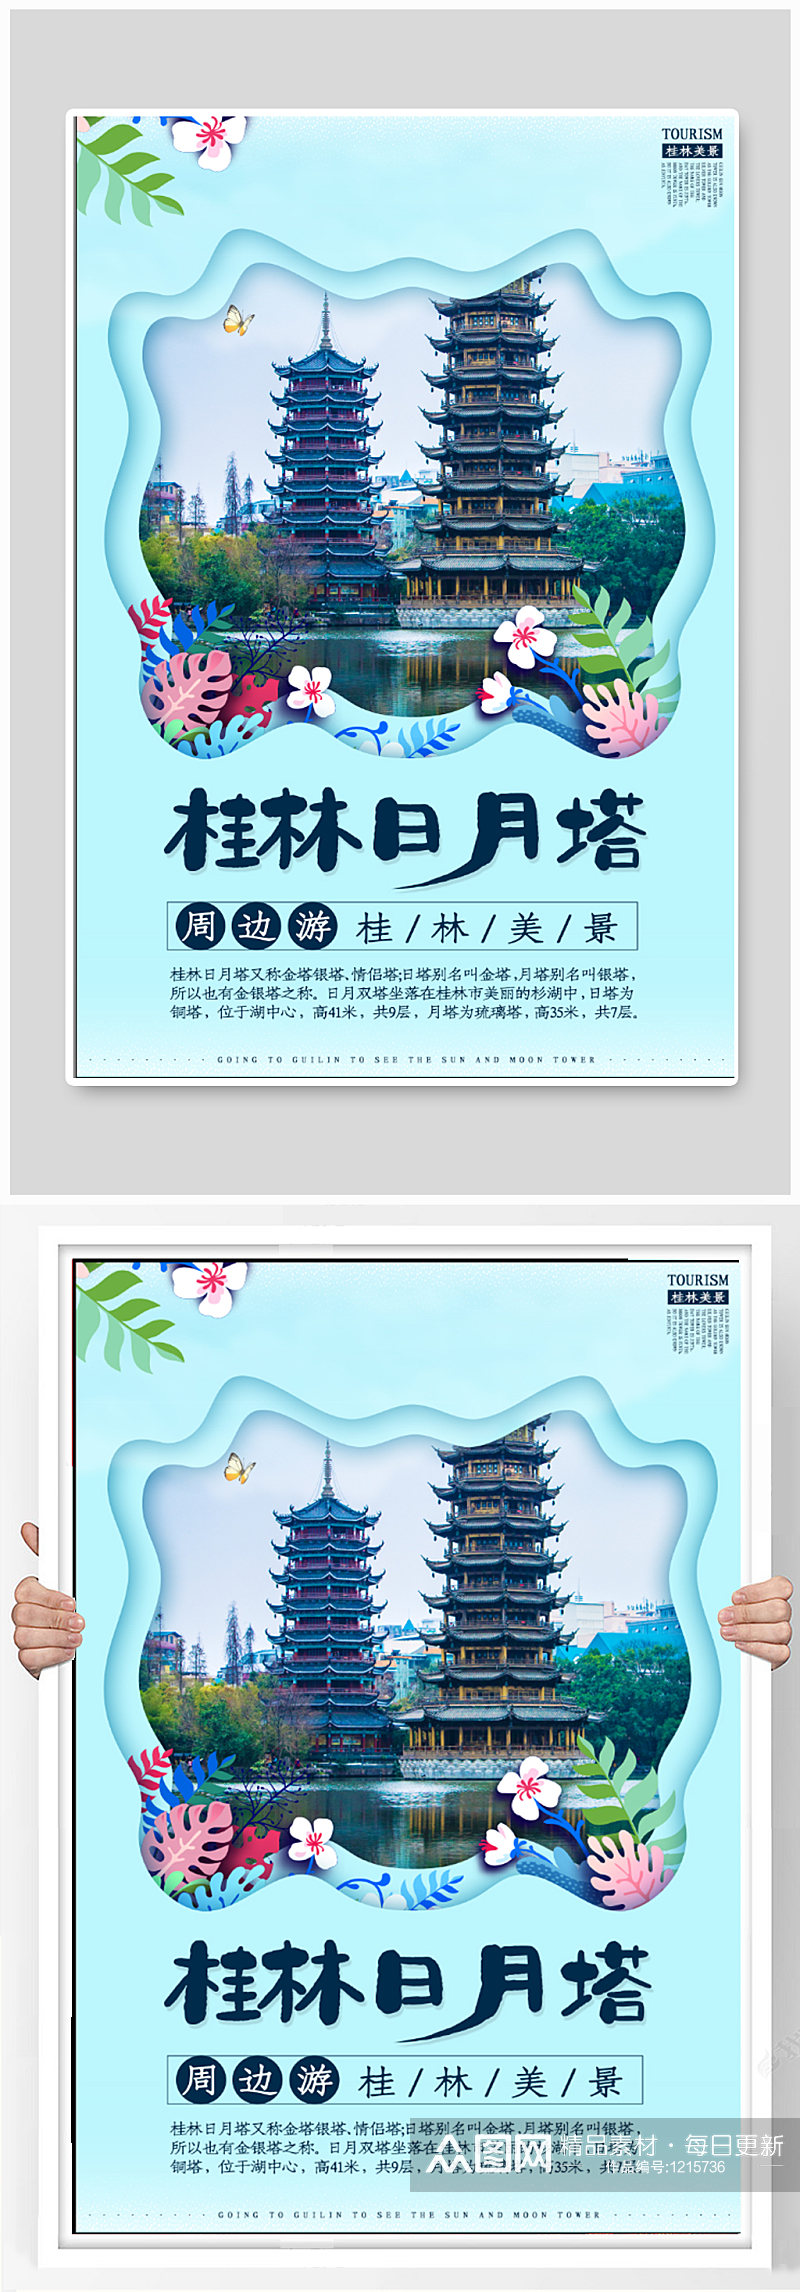 桂林履行宣传海报素材